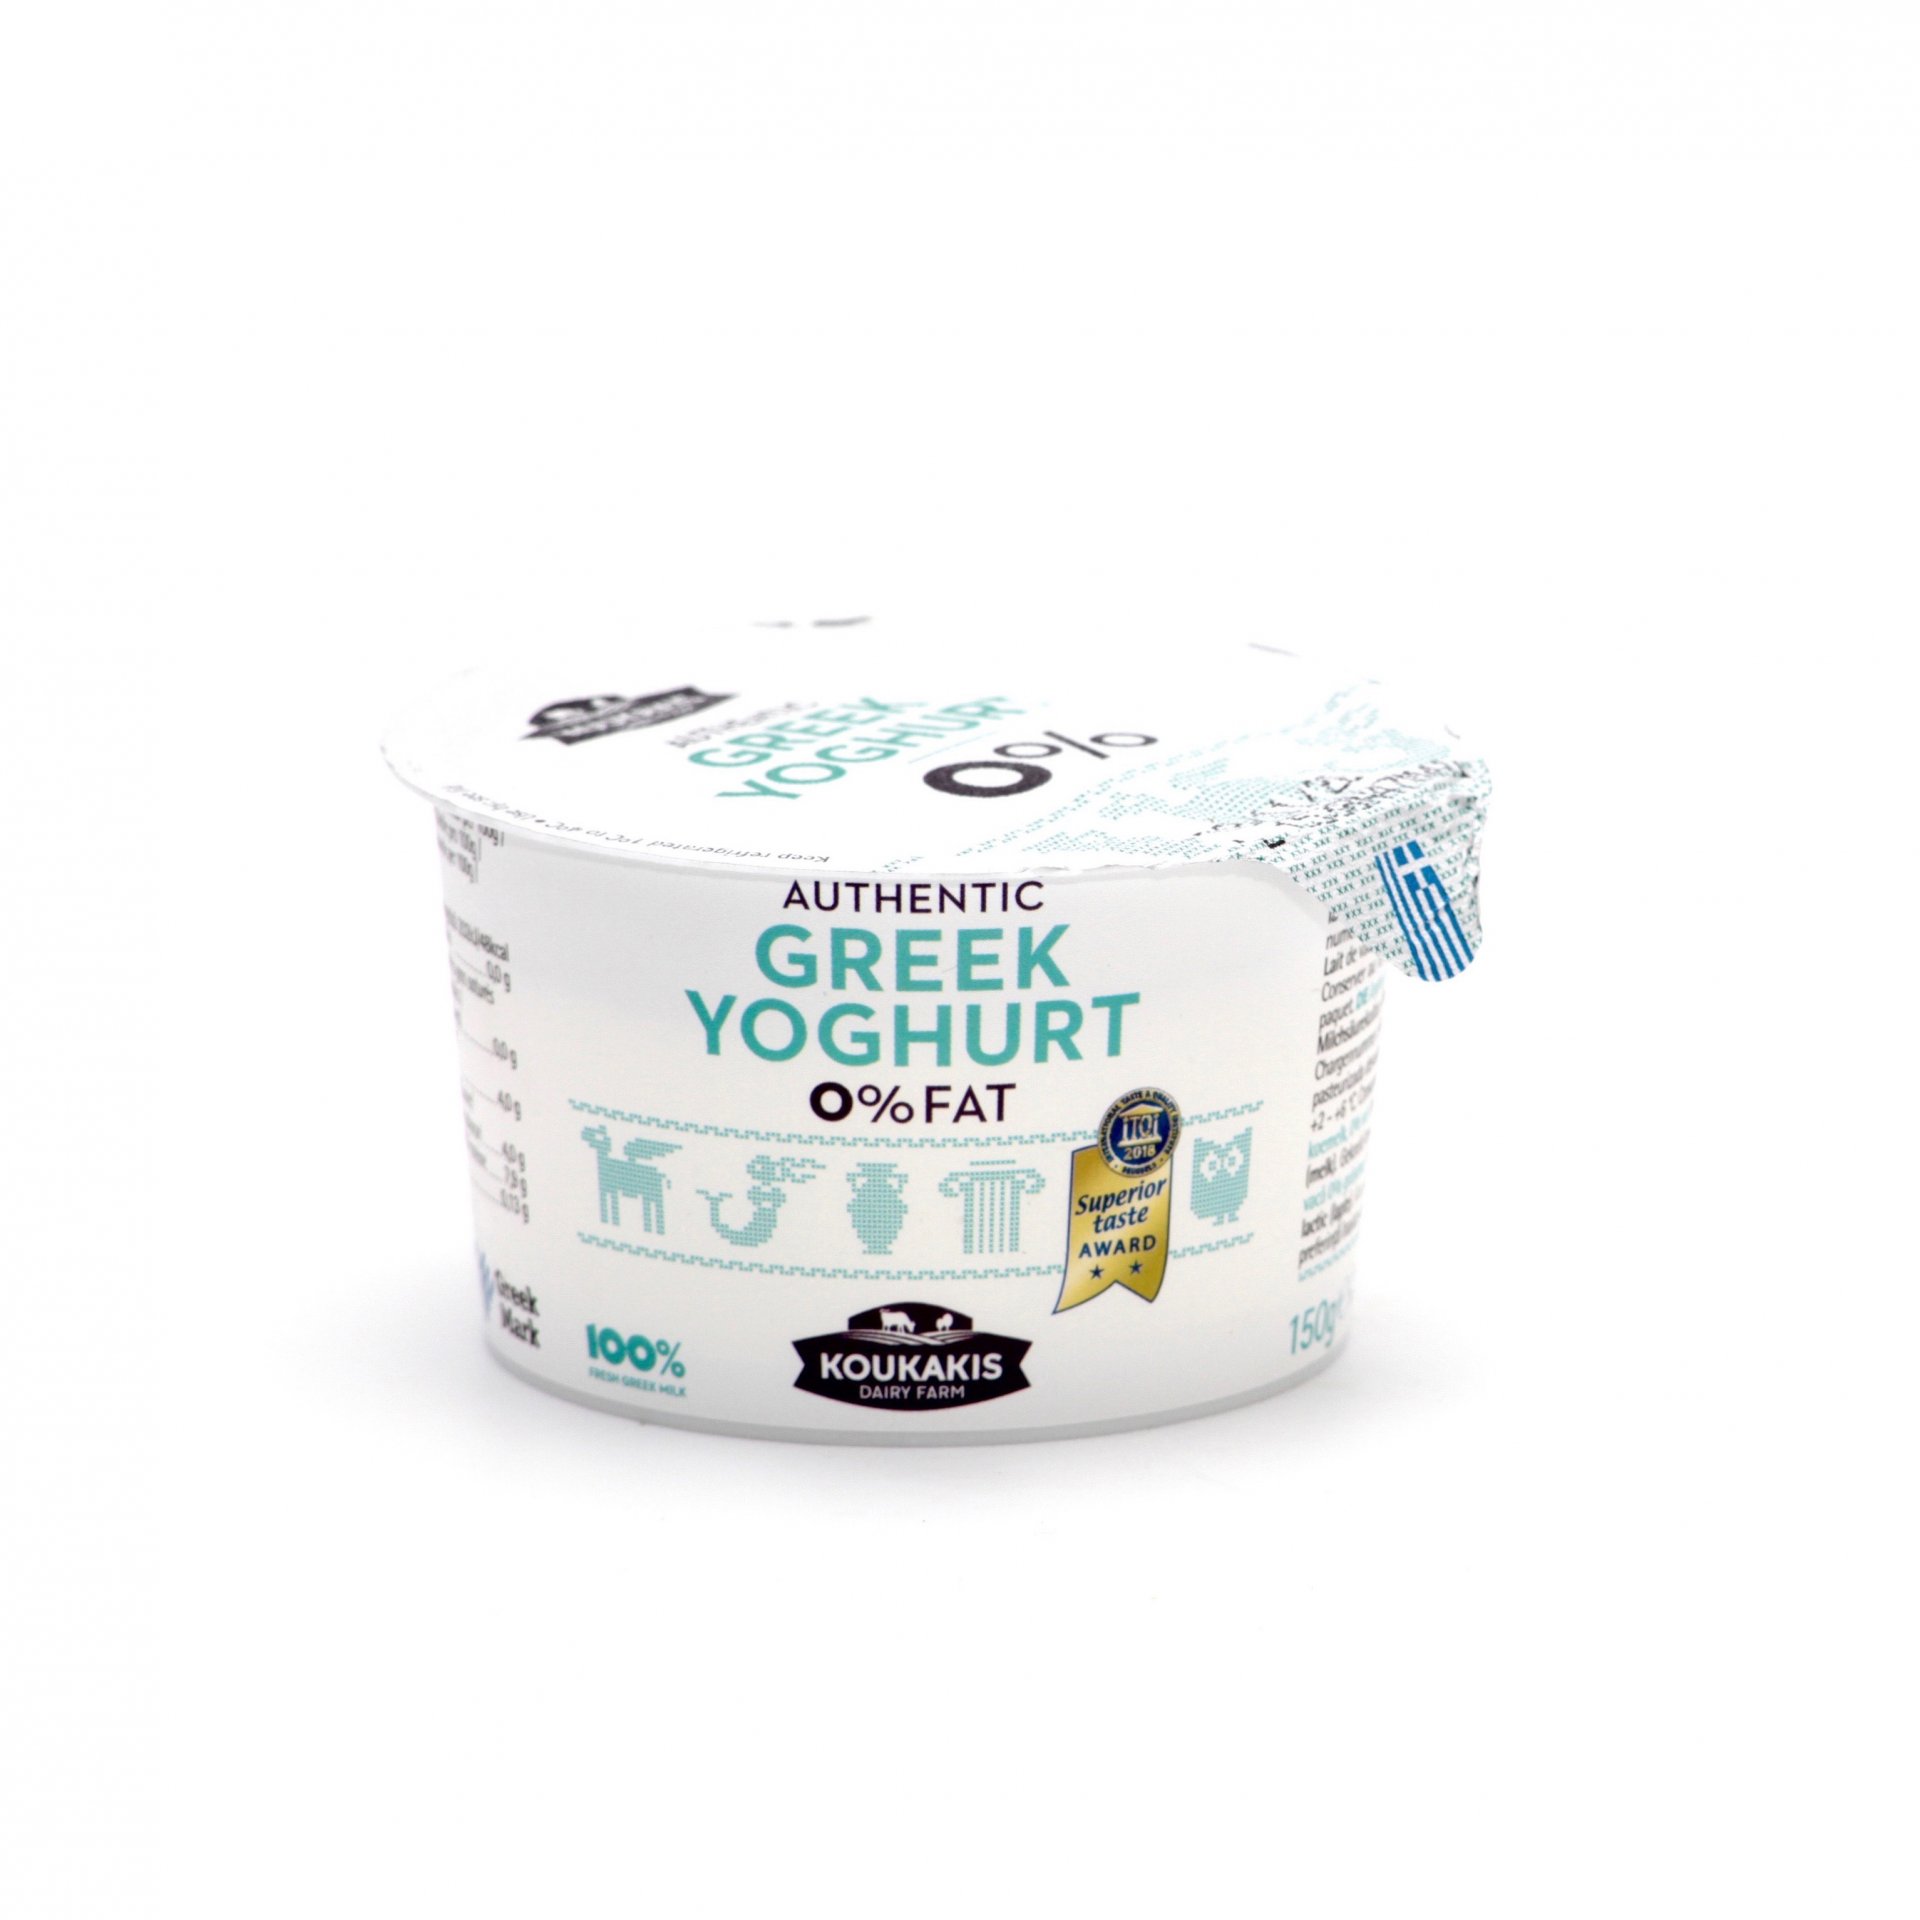 Grécky jogurt 0% 150g